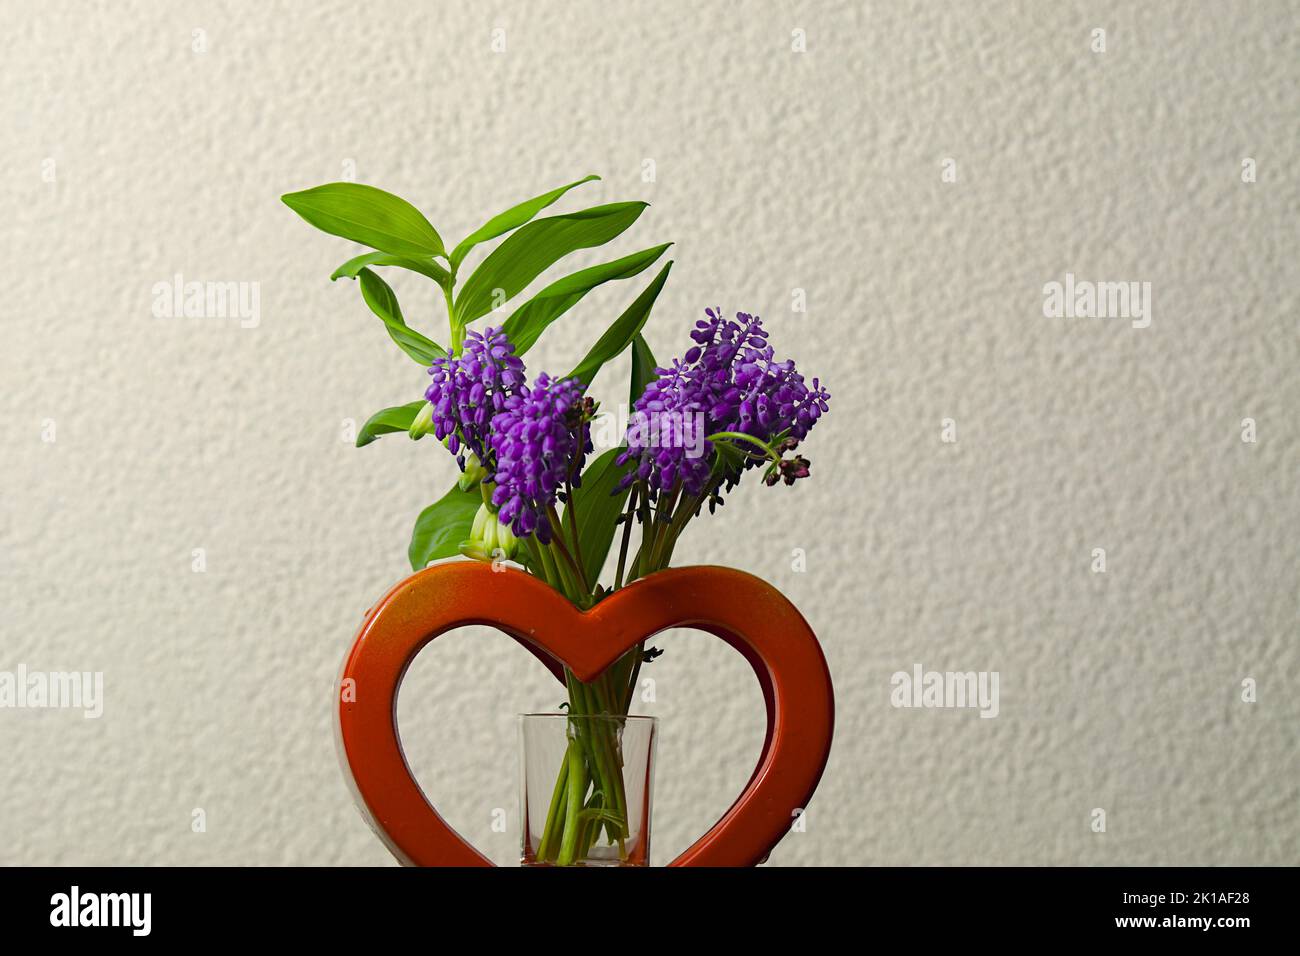 Die Hyazinthus gehört zur Pflanzenfamilie der Spargelgewächse und zählt zu den Frühblühern. Die krautige Pflanze bildet traubige Blütenstä Banque D'Images